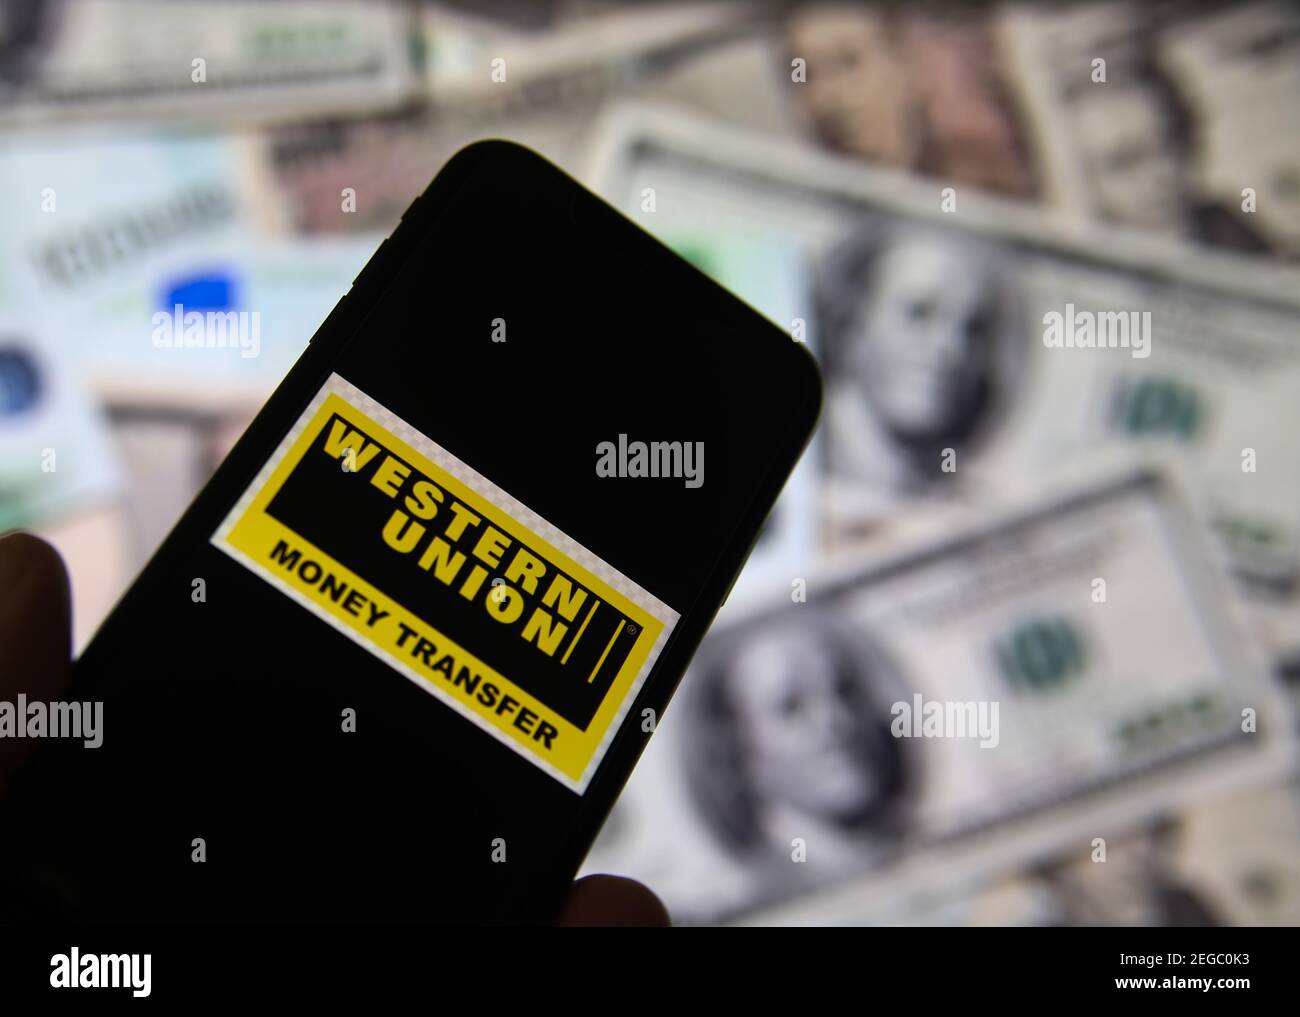 Viersen, Deutschland - Februar 9. 2020: Nahaufnahme des Smartphone-Bildschirms mit Logo-Schriftzug des Online-Geldtransfer-Service Western Union, verschwommene Banknote Stockfoto